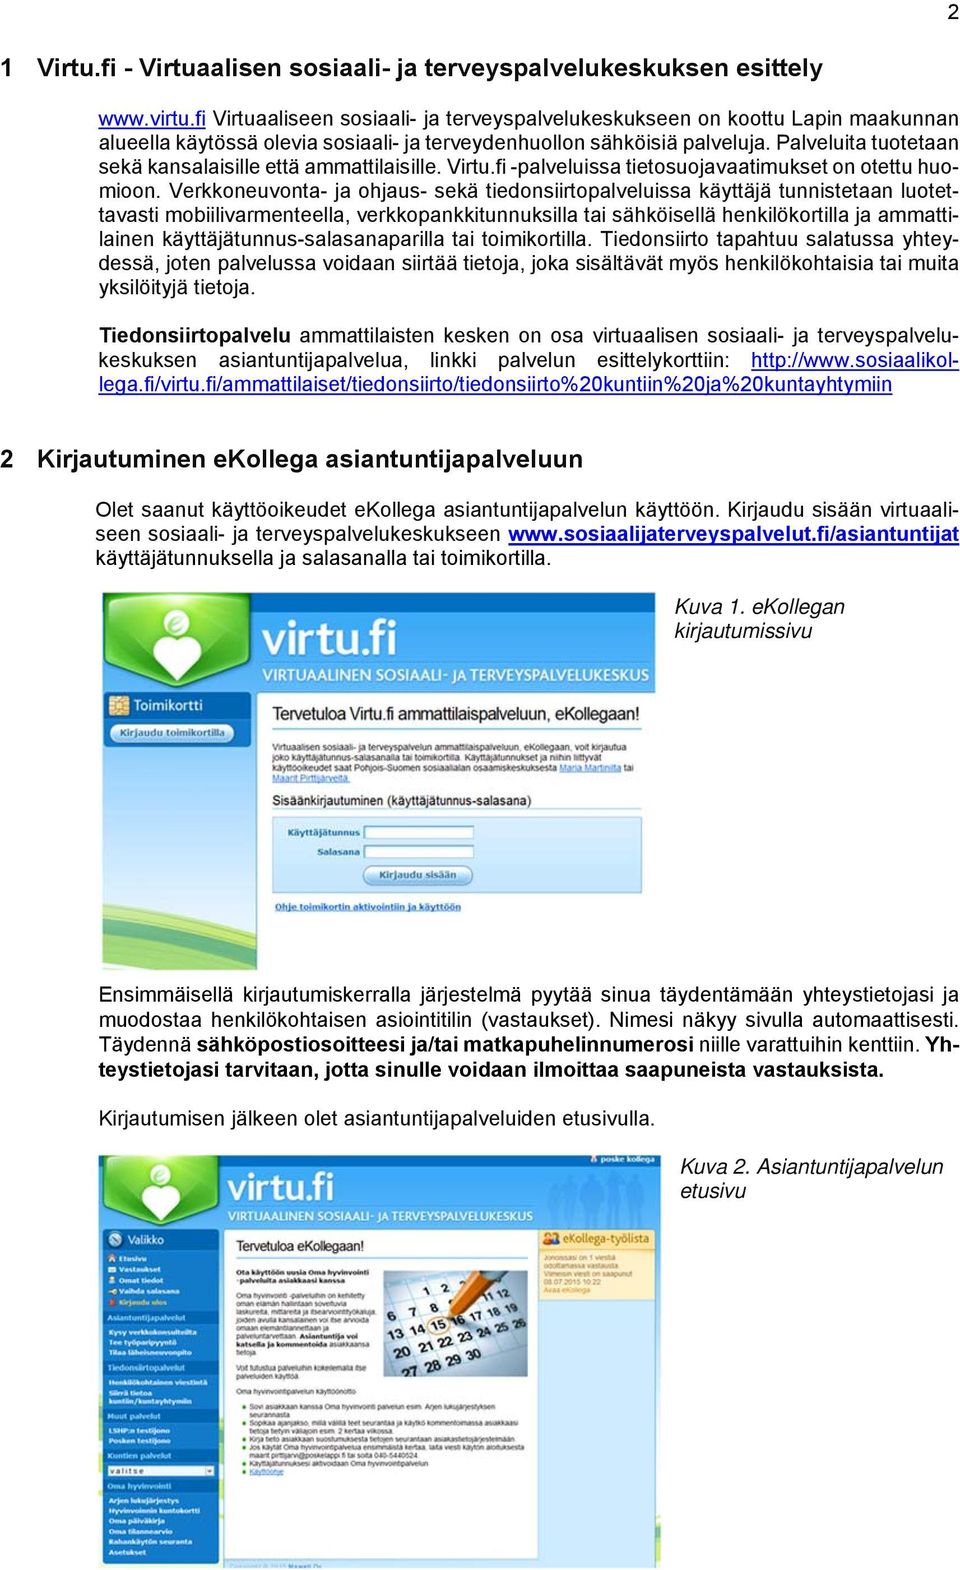 Palveluita tuotetaan sekä kansalaisille että ammattilaisille. Virtu.fi -palveluissa tietosuojavaatimukset on otettu huomioon.